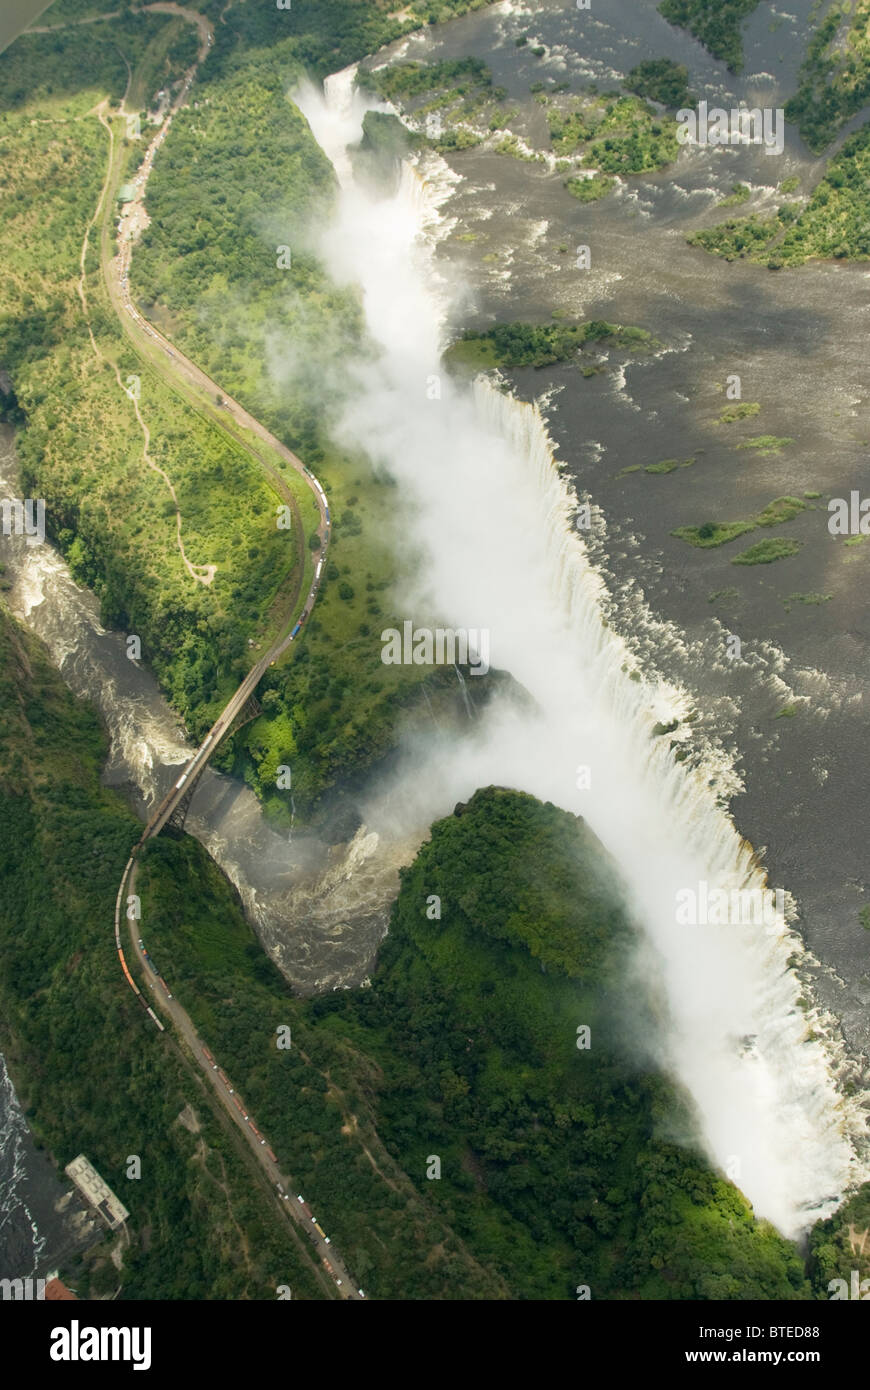 Une vue aérienne des chutes Victoria et le pont sur le Devils Cataract Gorge reliant le Zimbabwe et la Zambie Banque D'Images